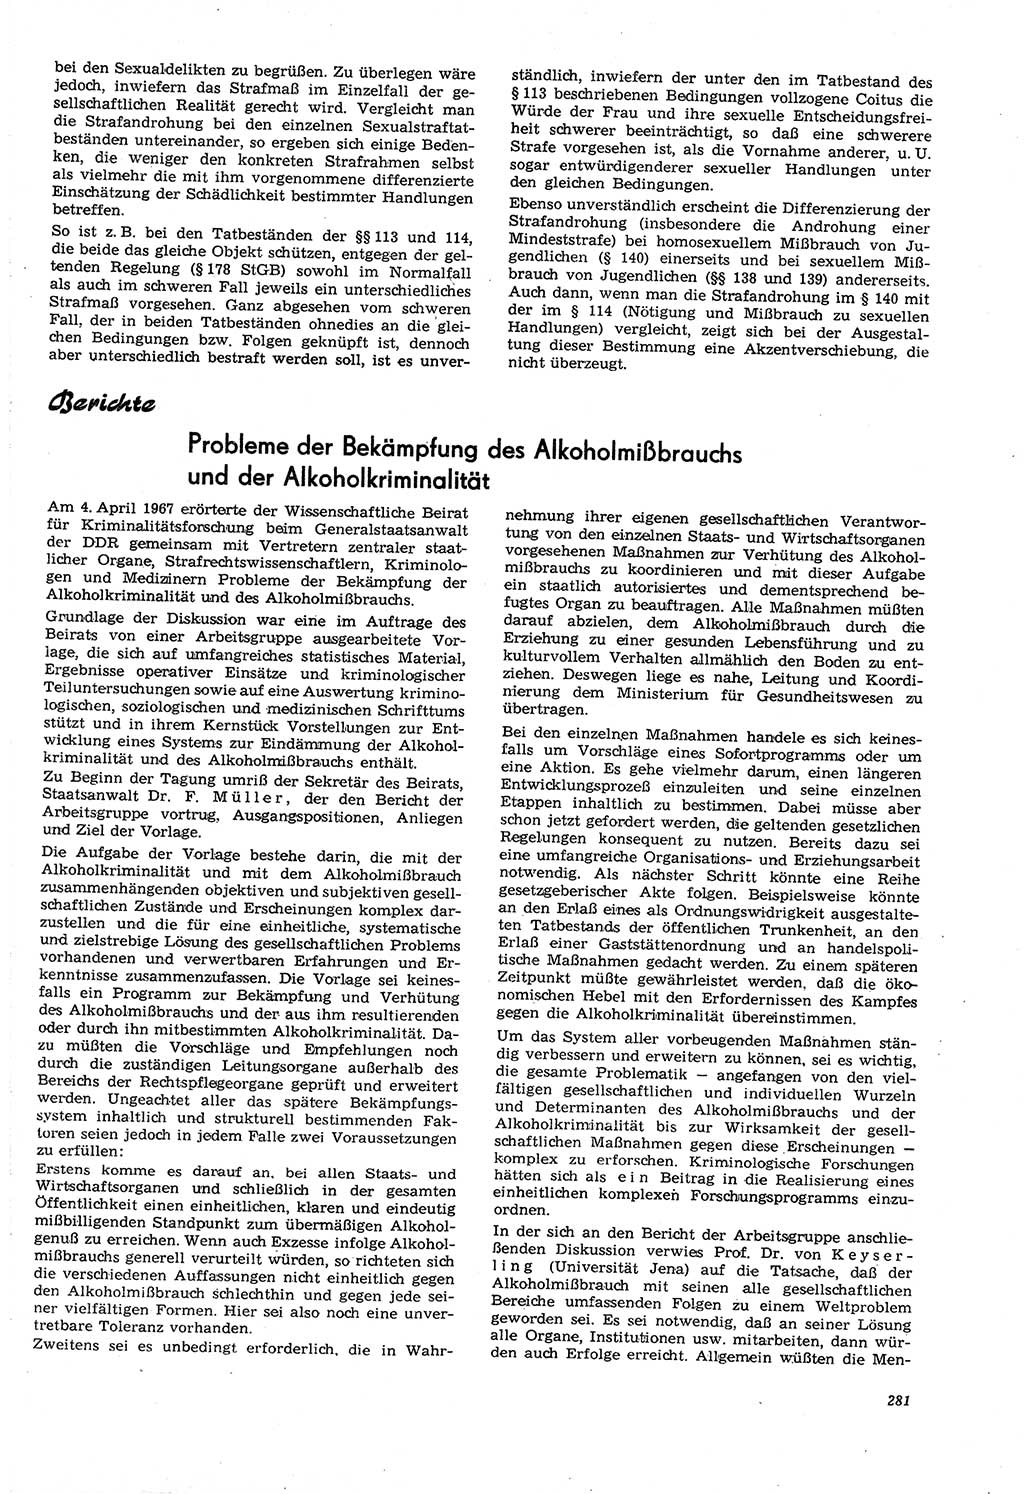 Neue Justiz (NJ), Zeitschrift für Recht und Rechtswissenschaft [Deutsche Demokratische Republik (DDR)], 21. Jahrgang 1967, Seite 281 (NJ DDR 1967, S. 281)